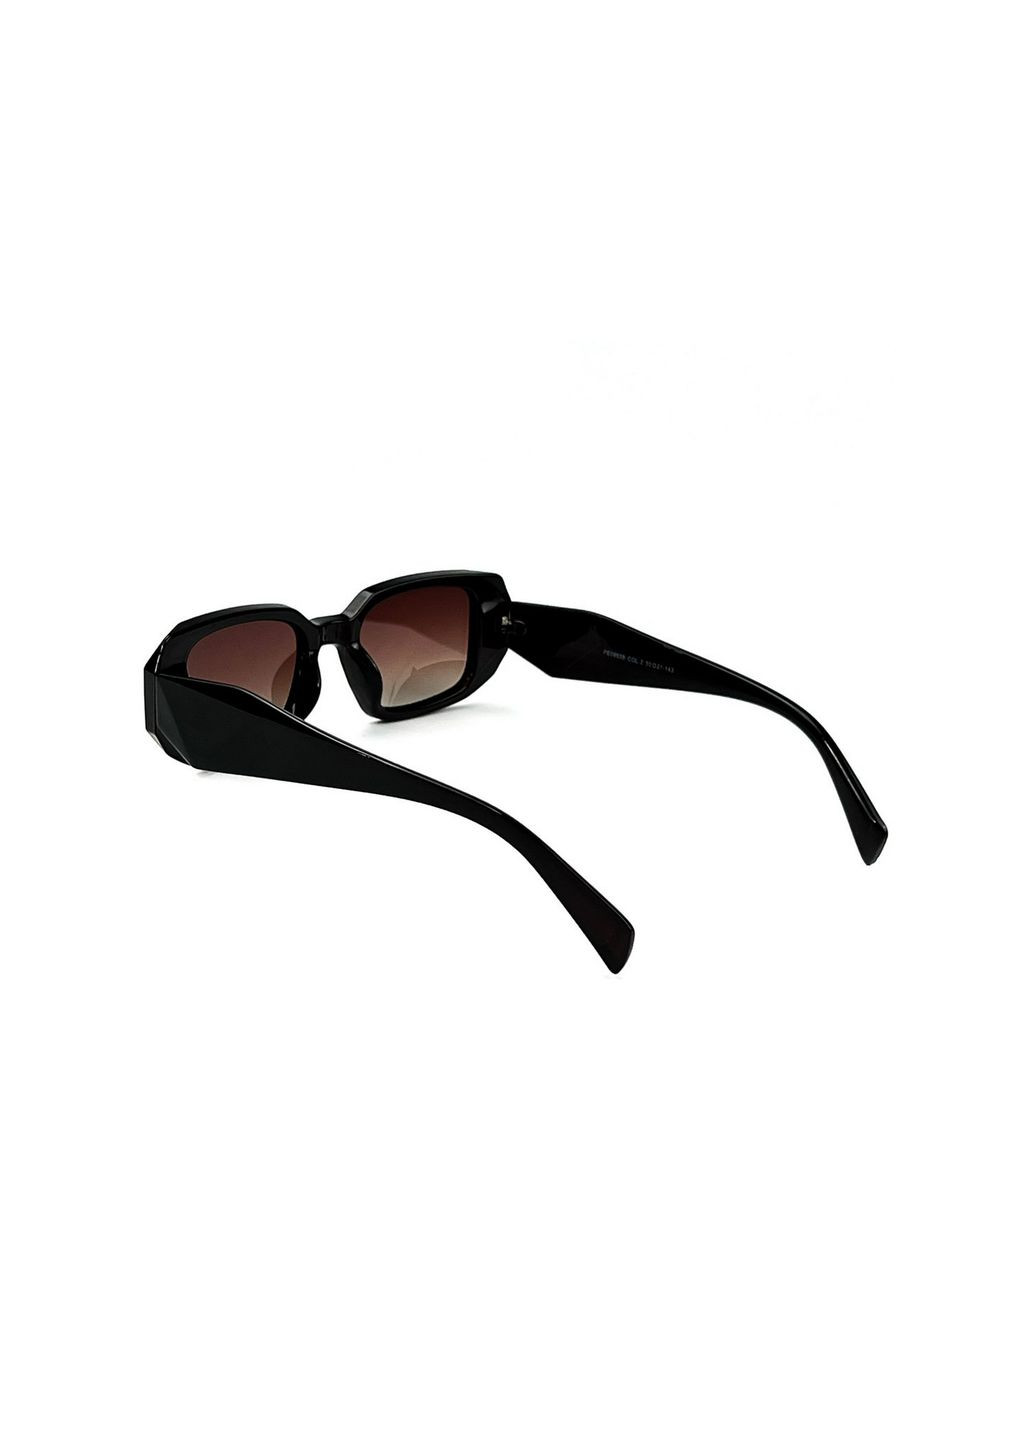 Солнцезащитные очки с поляризацией Фэшн-классика женские LuckyLOOK 184-794 (290278079)